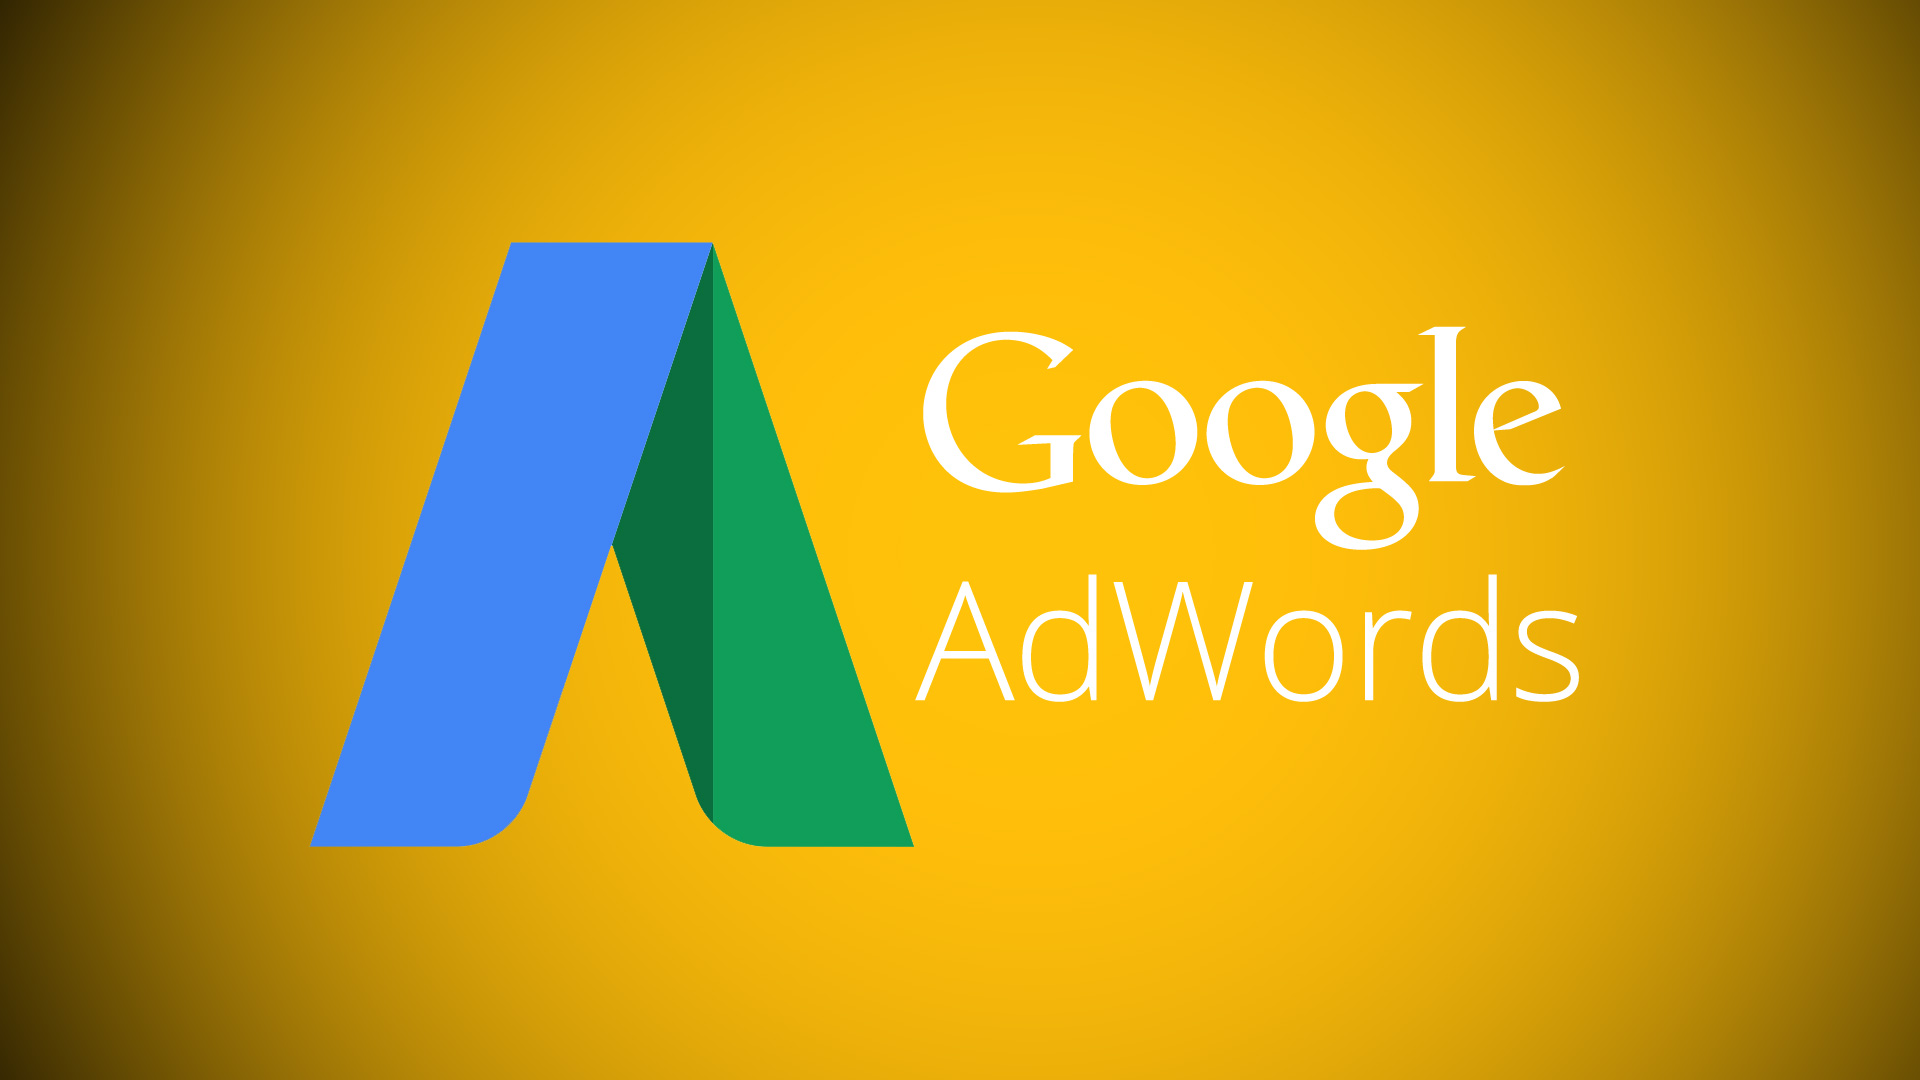 Google Ads Reklamlarının E-ticaret Sektöründeki Önemi